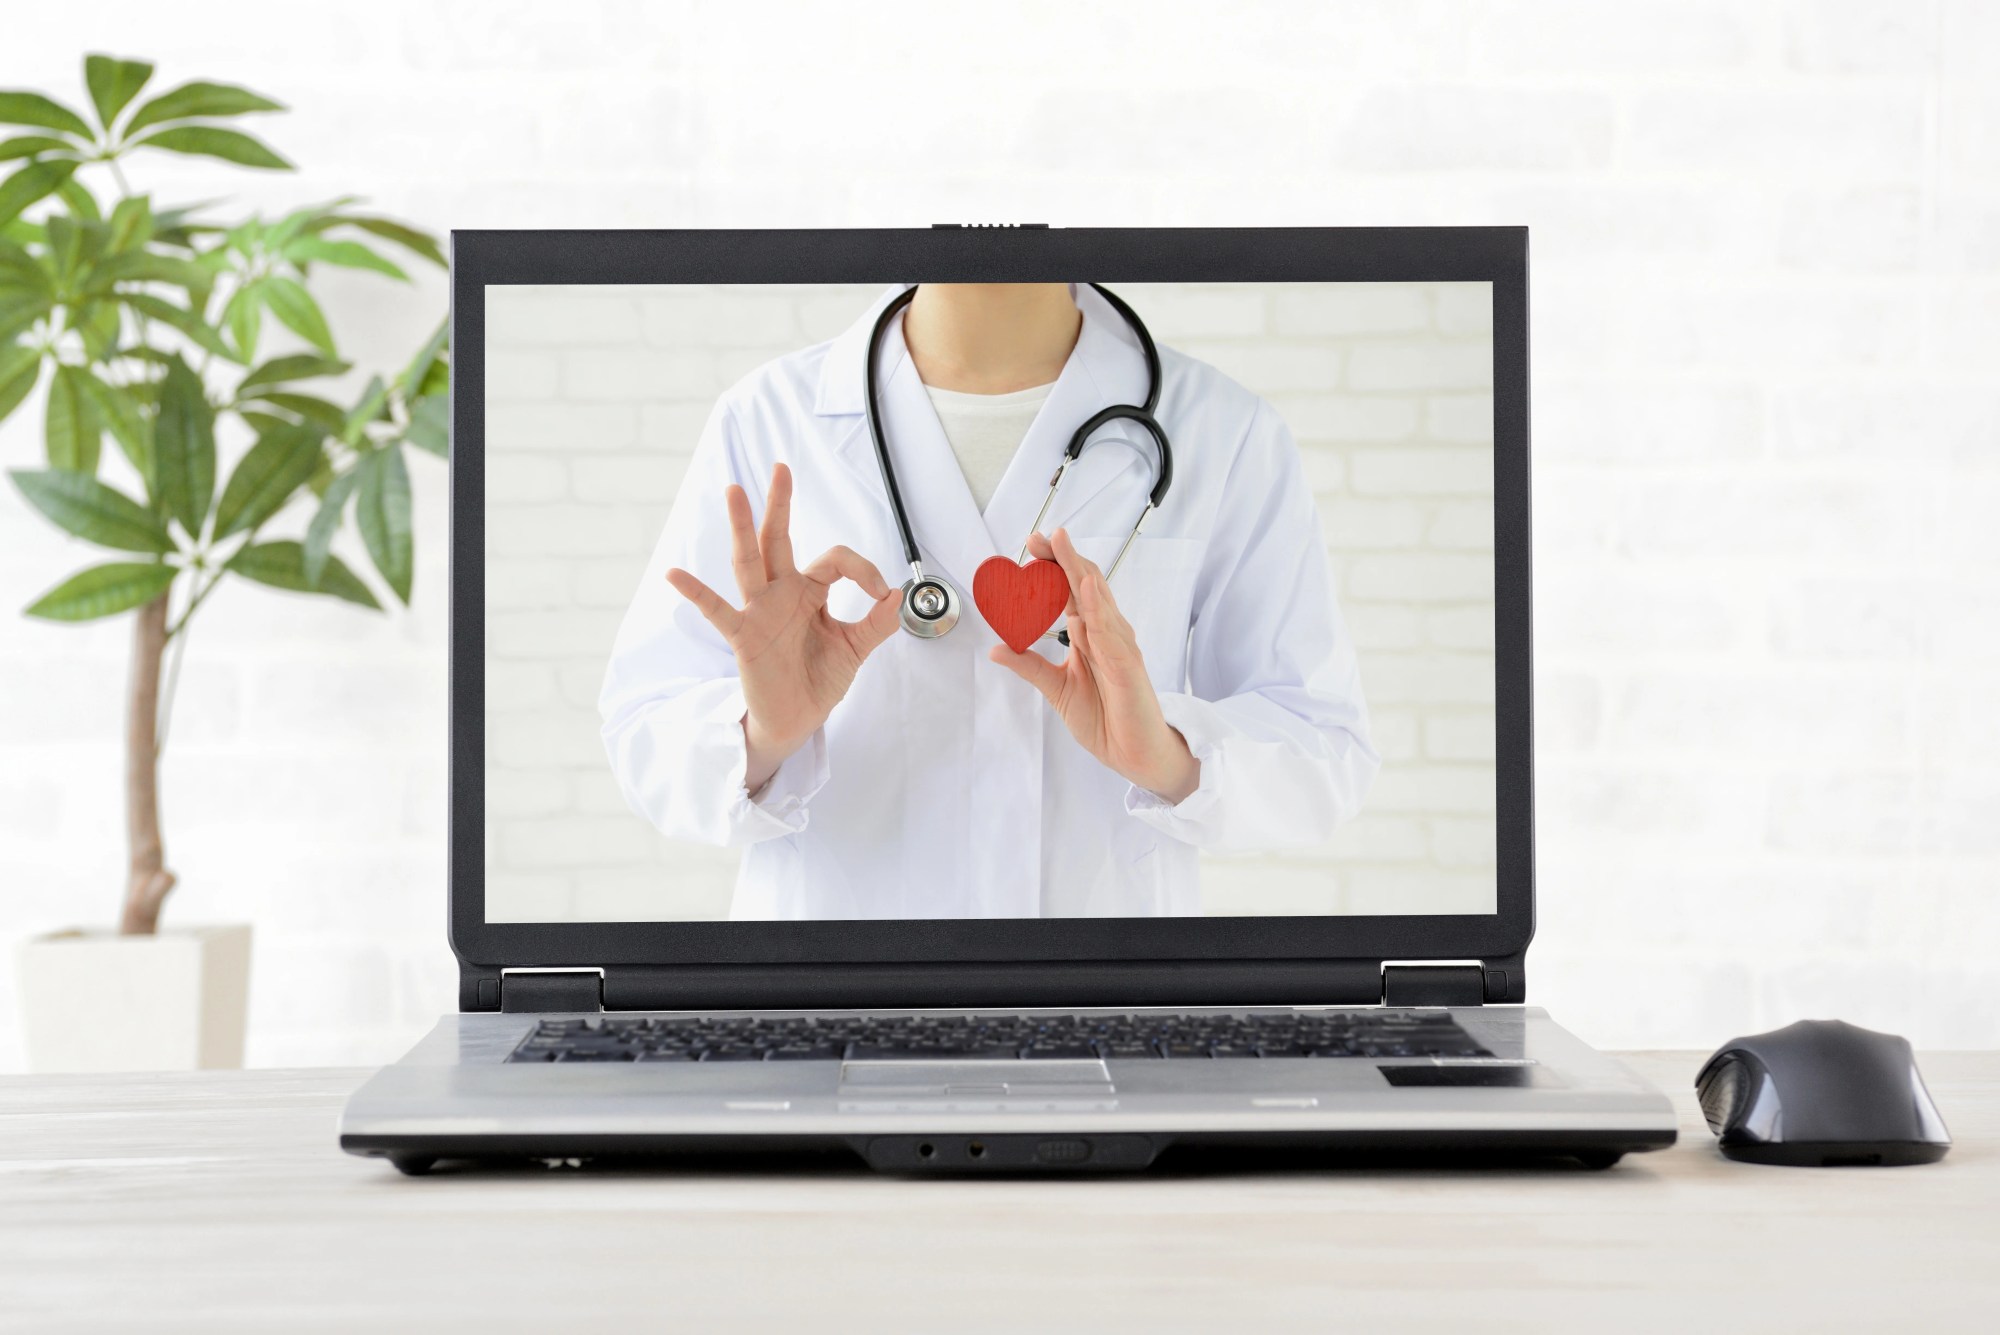 「オンライン診療」のイメージ_パソコンに医師が映っている様子